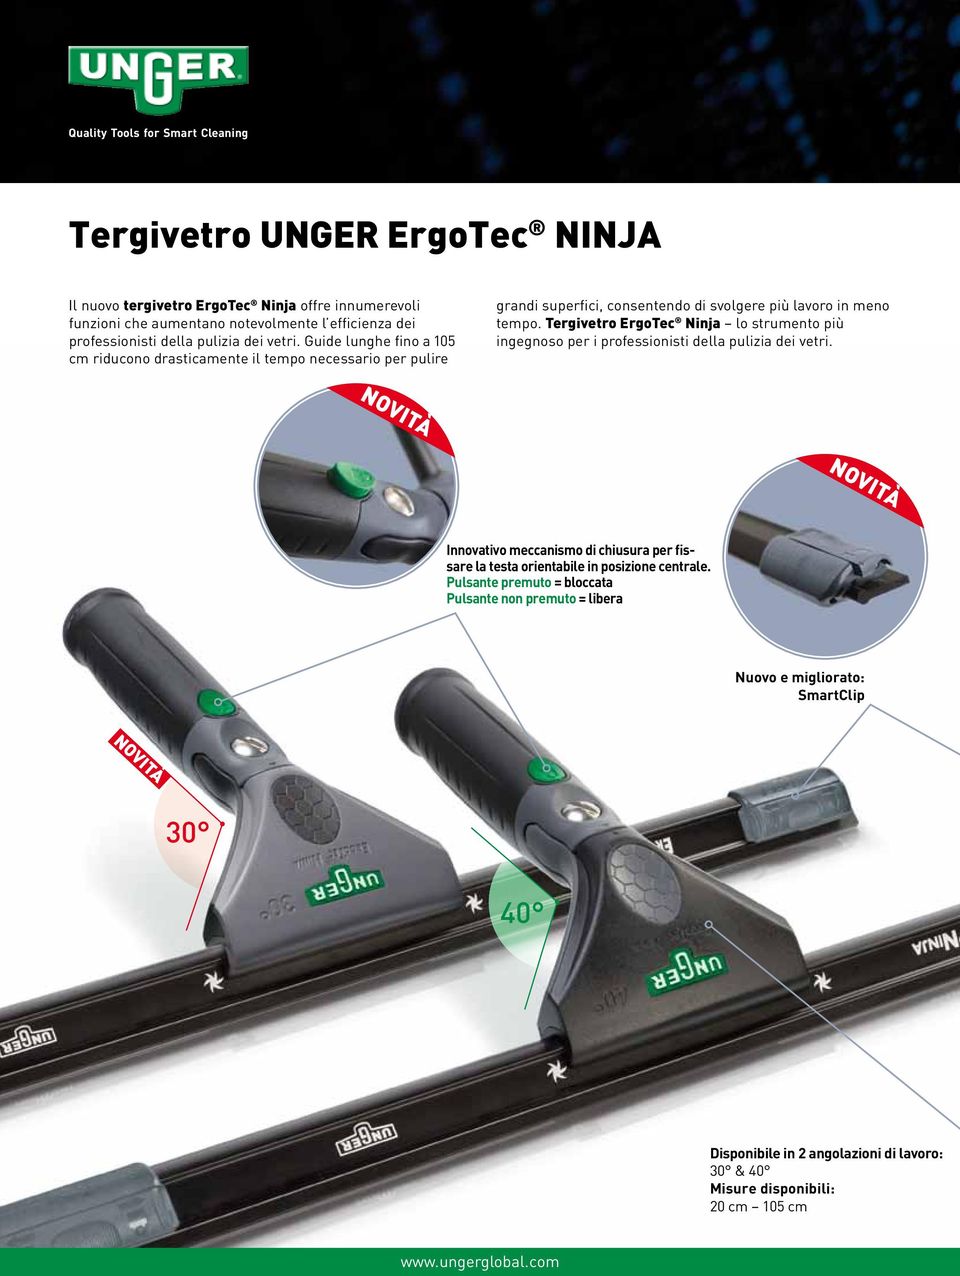 Tergivetro ErgoTec Ninja lo strumento più ingegnoso per i professionisti della pulizia dei vetri.